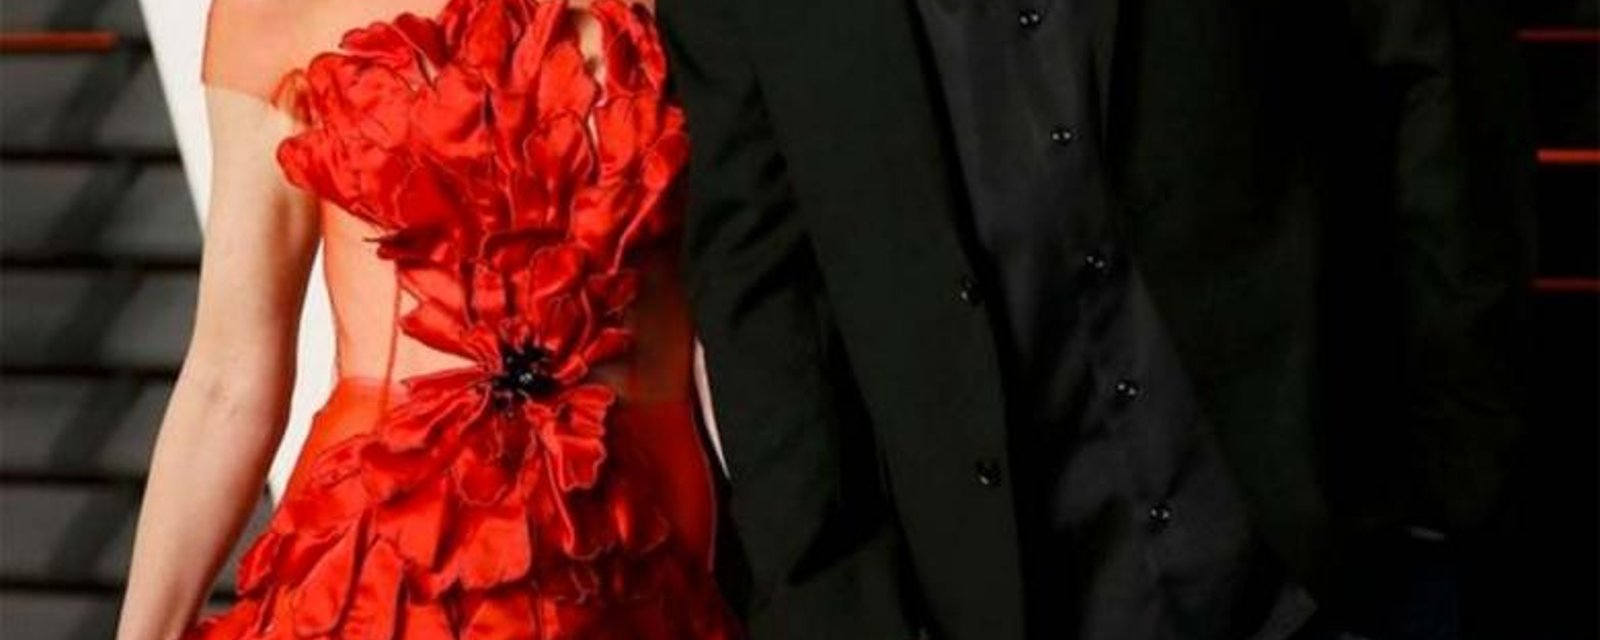 Ce nouveau couple de stars était les mieux habillés sur le tapis rouge des Oscars!